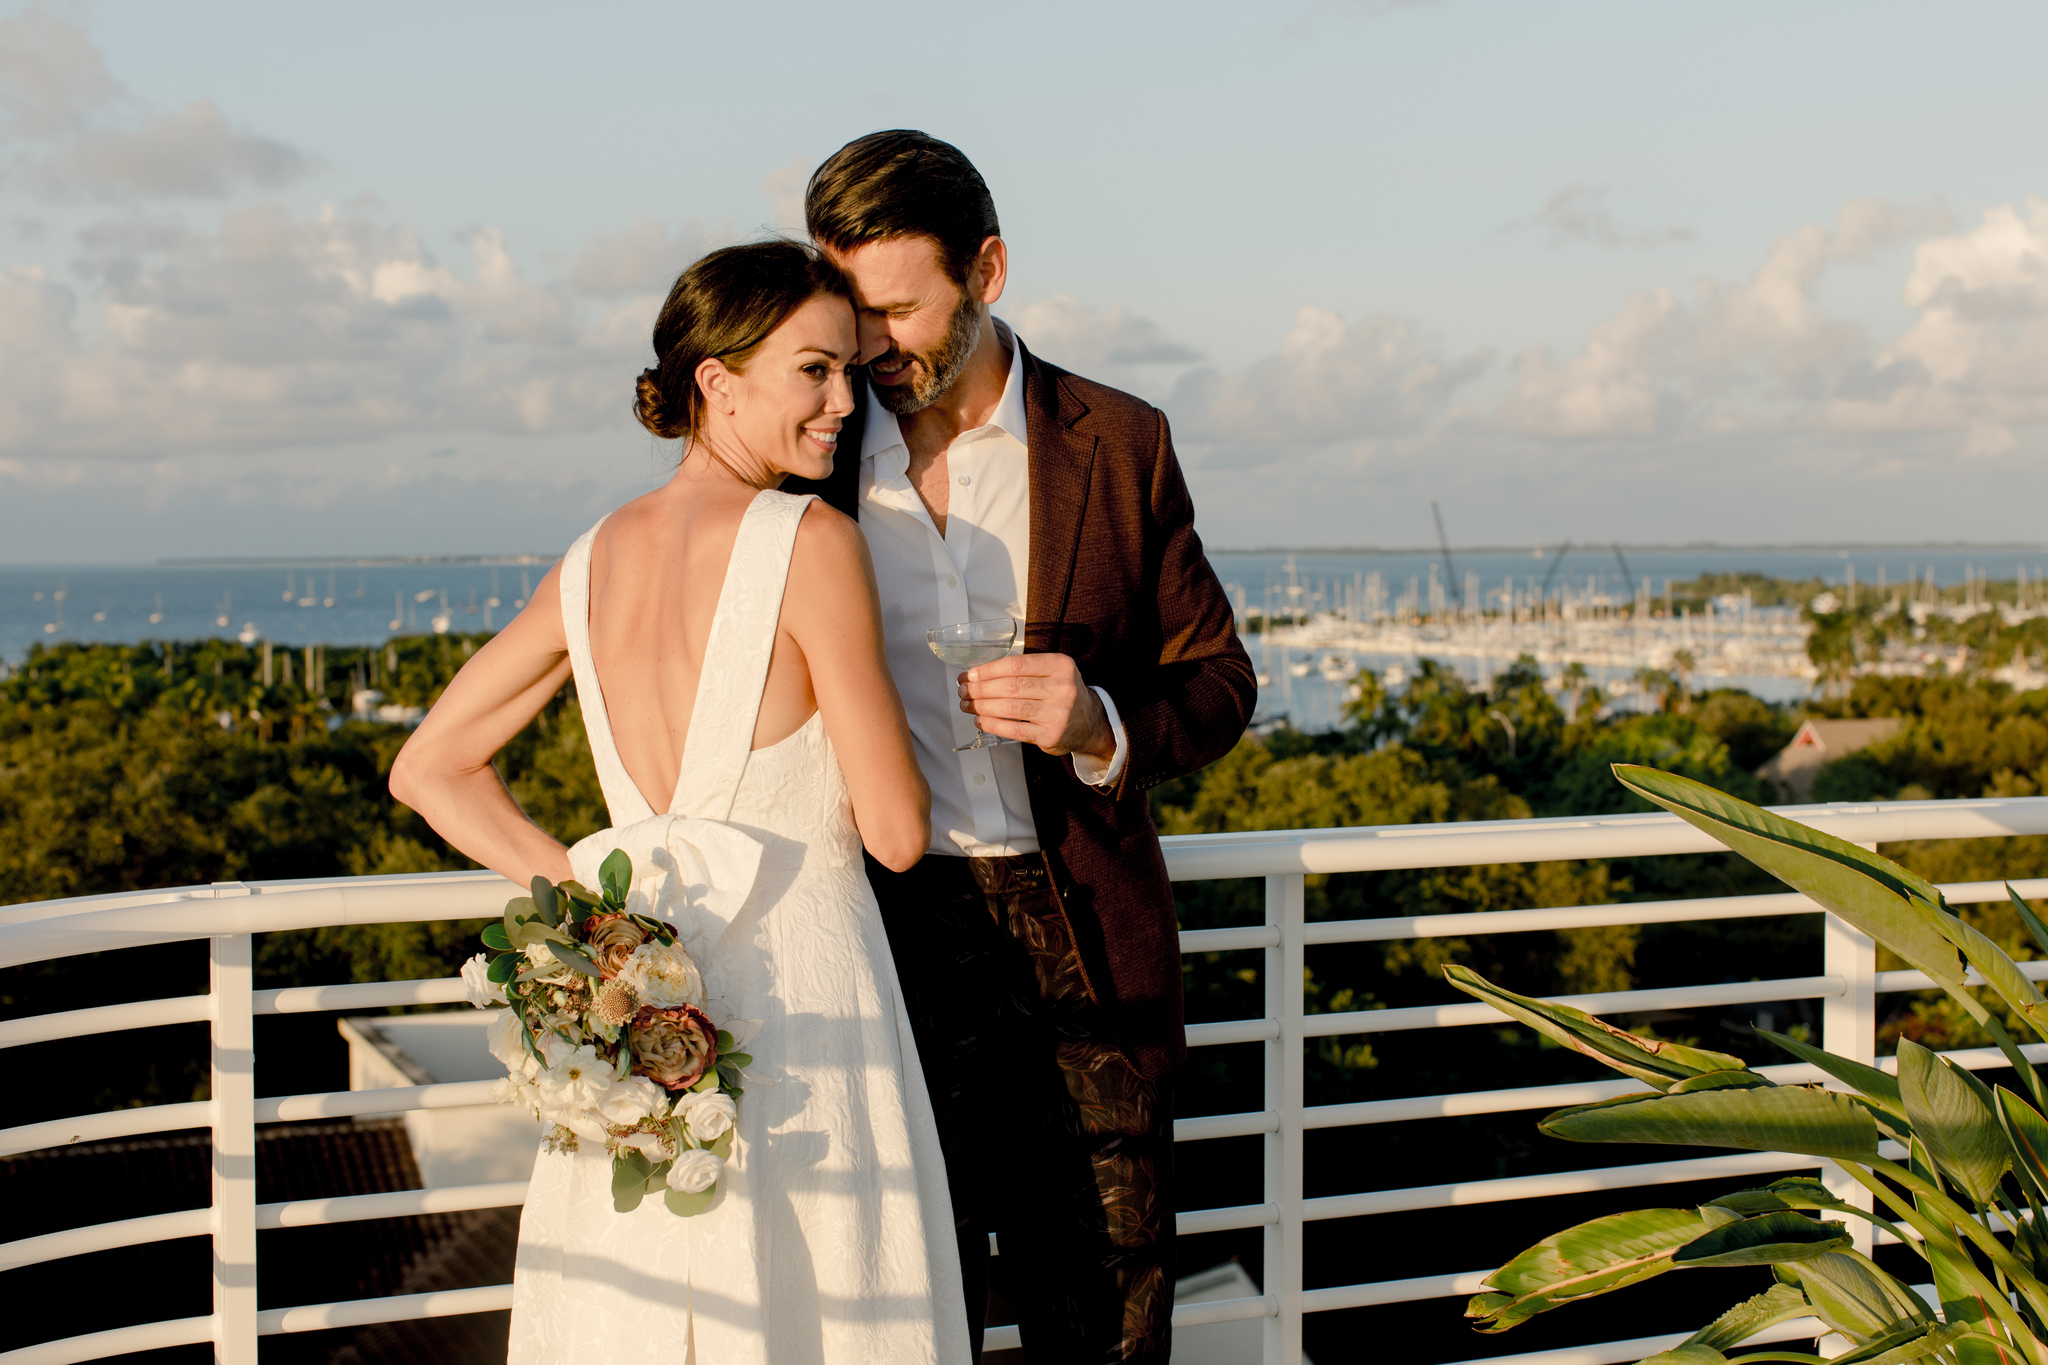 external shot of bride and groom overlooking coast